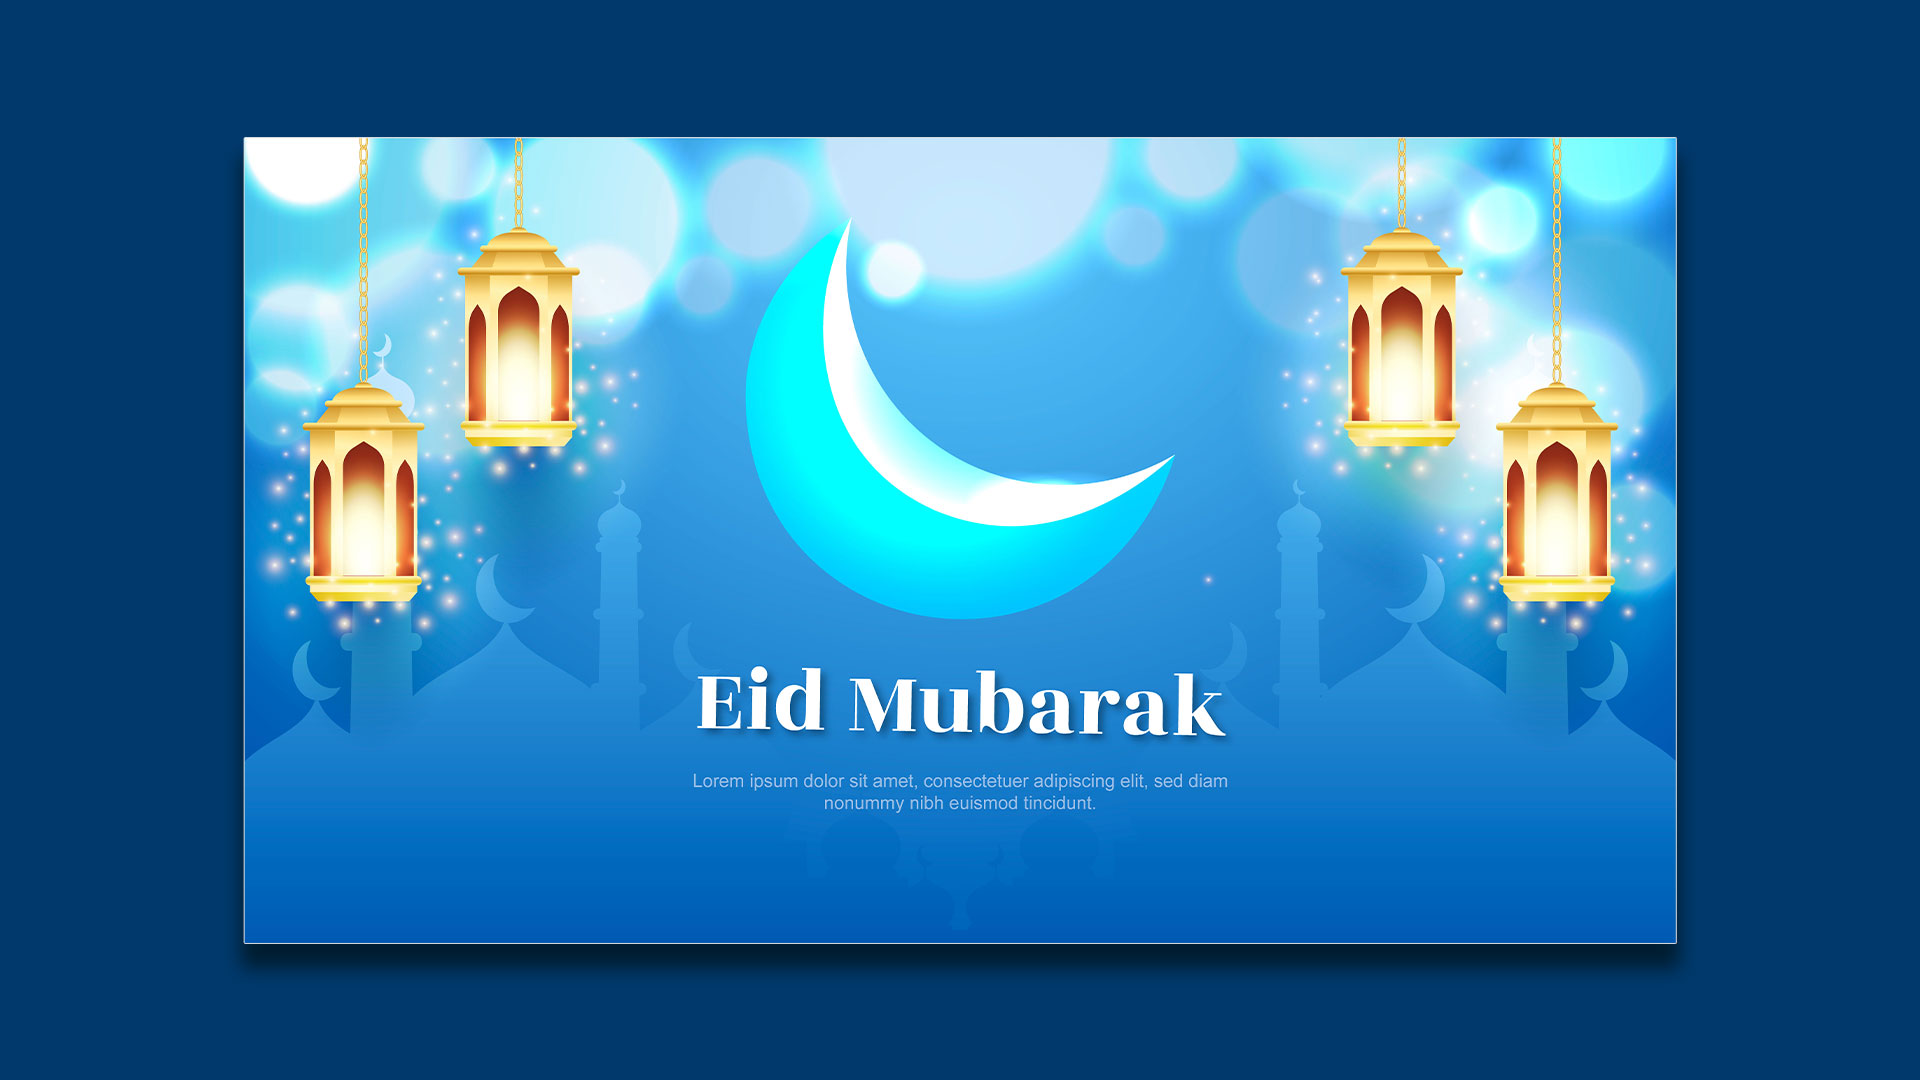 Épinglé sur ramadhan&eid mubarak